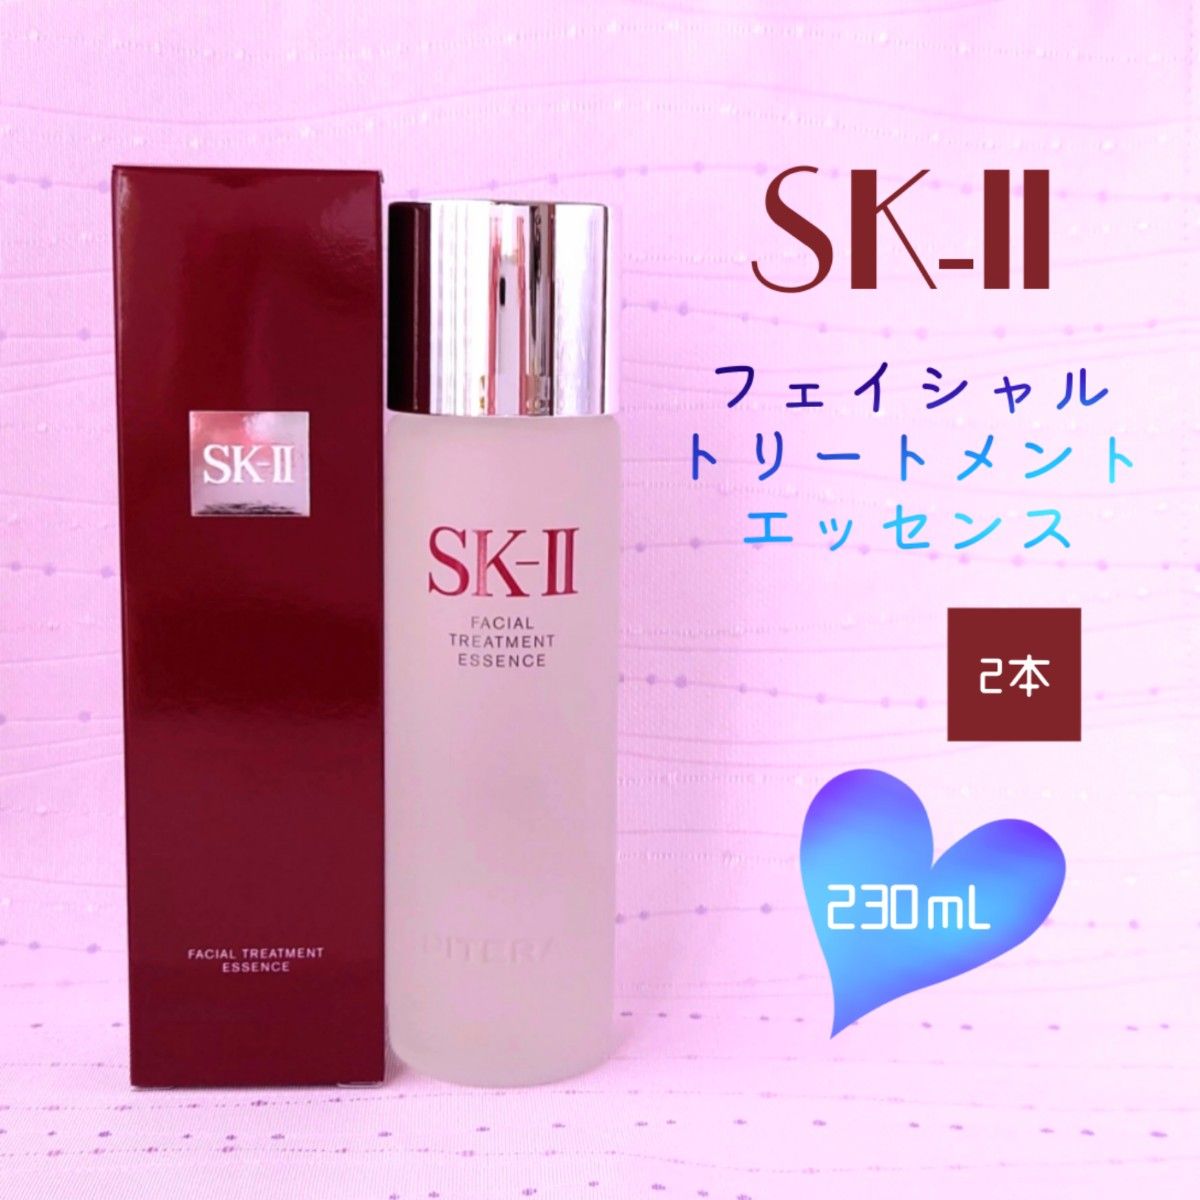 新品 SK-II フェイシャル トリートメント エッセンス 230ml 2本 スキンケア、基礎化粧品 スキンケア、基礎化粧品